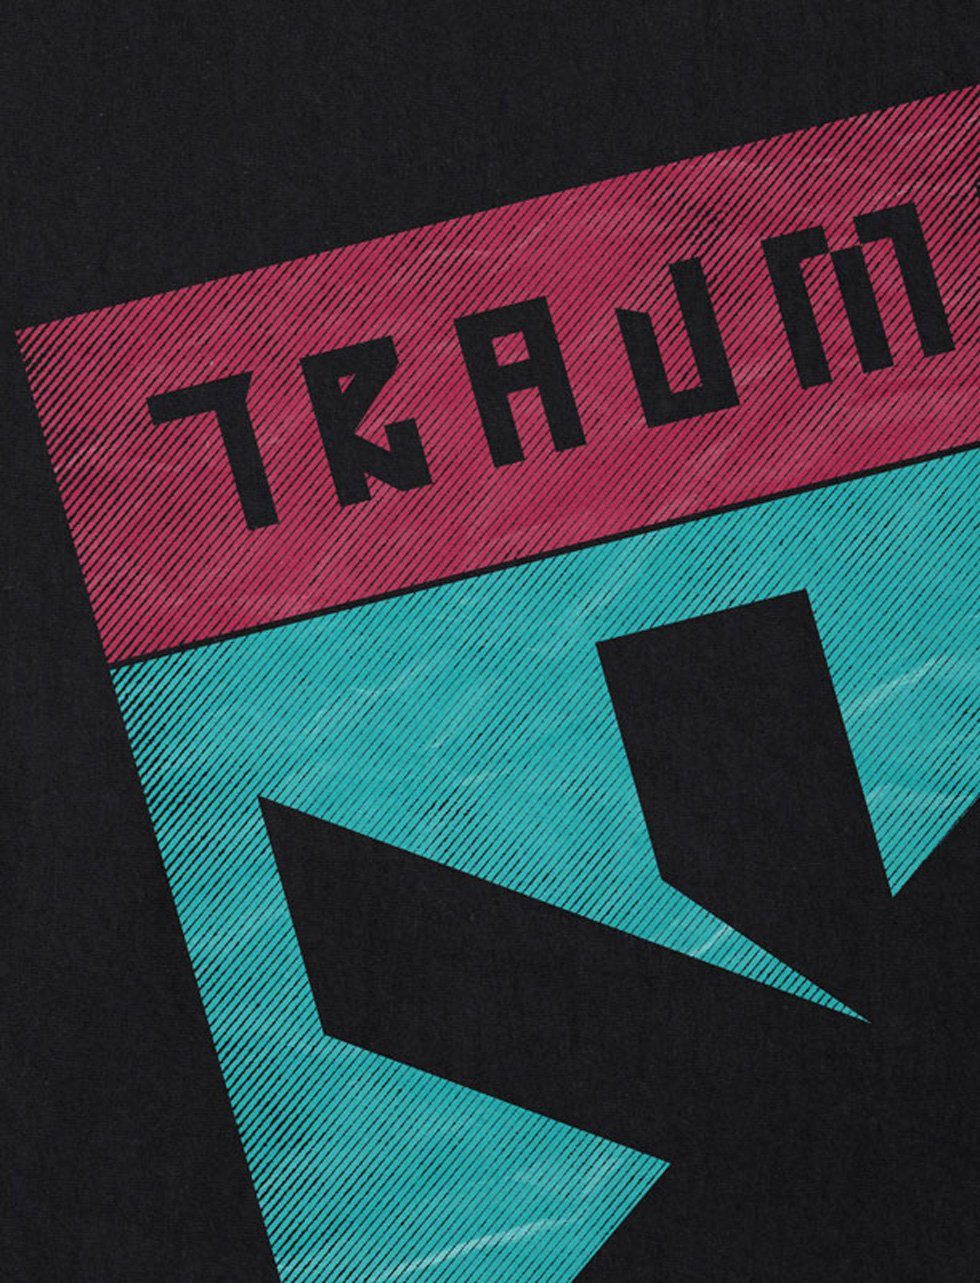 silverhand Cyberpunk samurai style3 Herren Team Trauma Print-Shirt T-Shirt